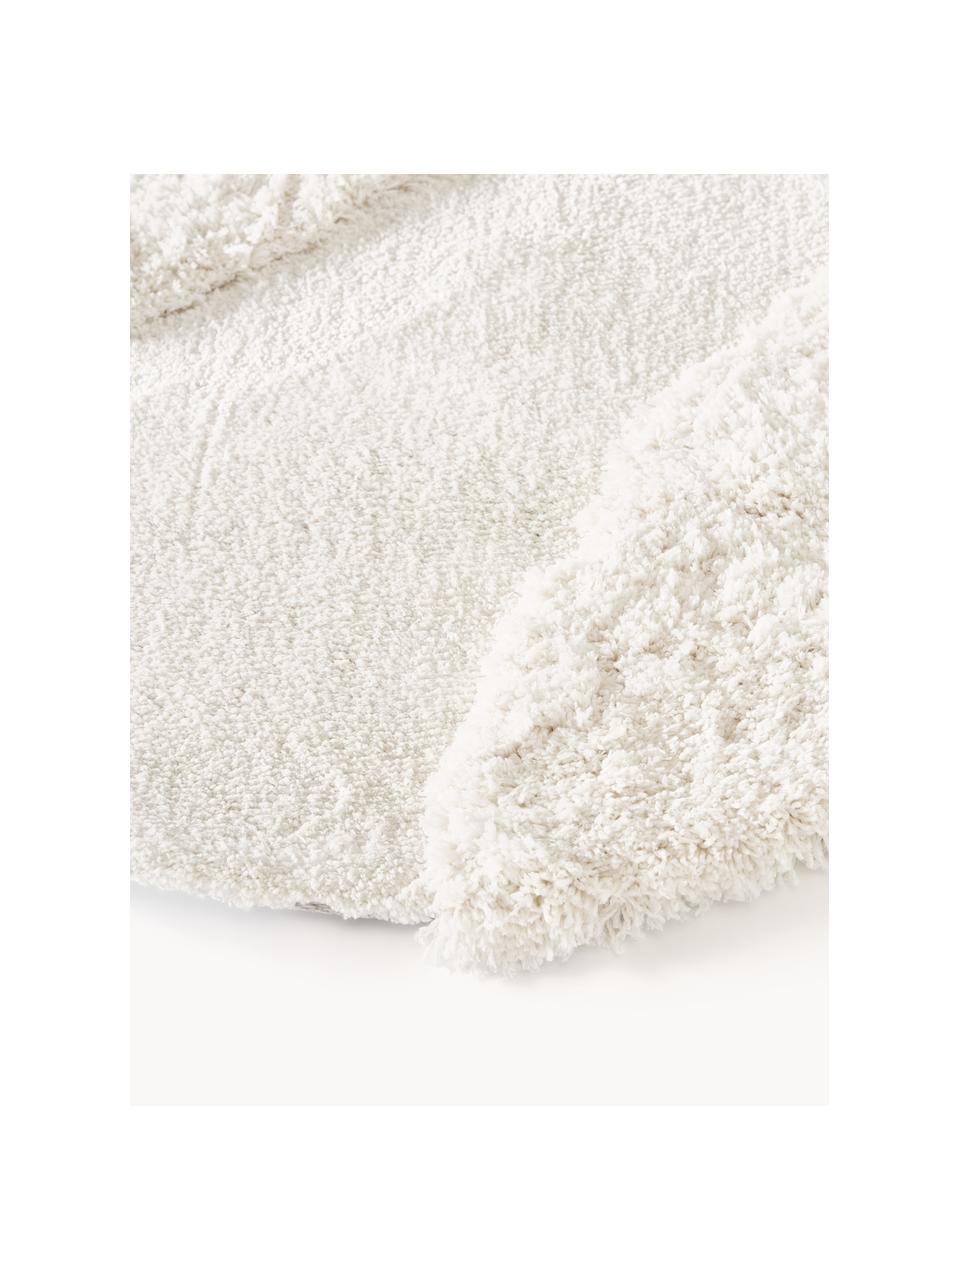 Flauschiger Teppich Kyla in organischer Form, Weiß, B 160 x L 230 cm (Größe M)